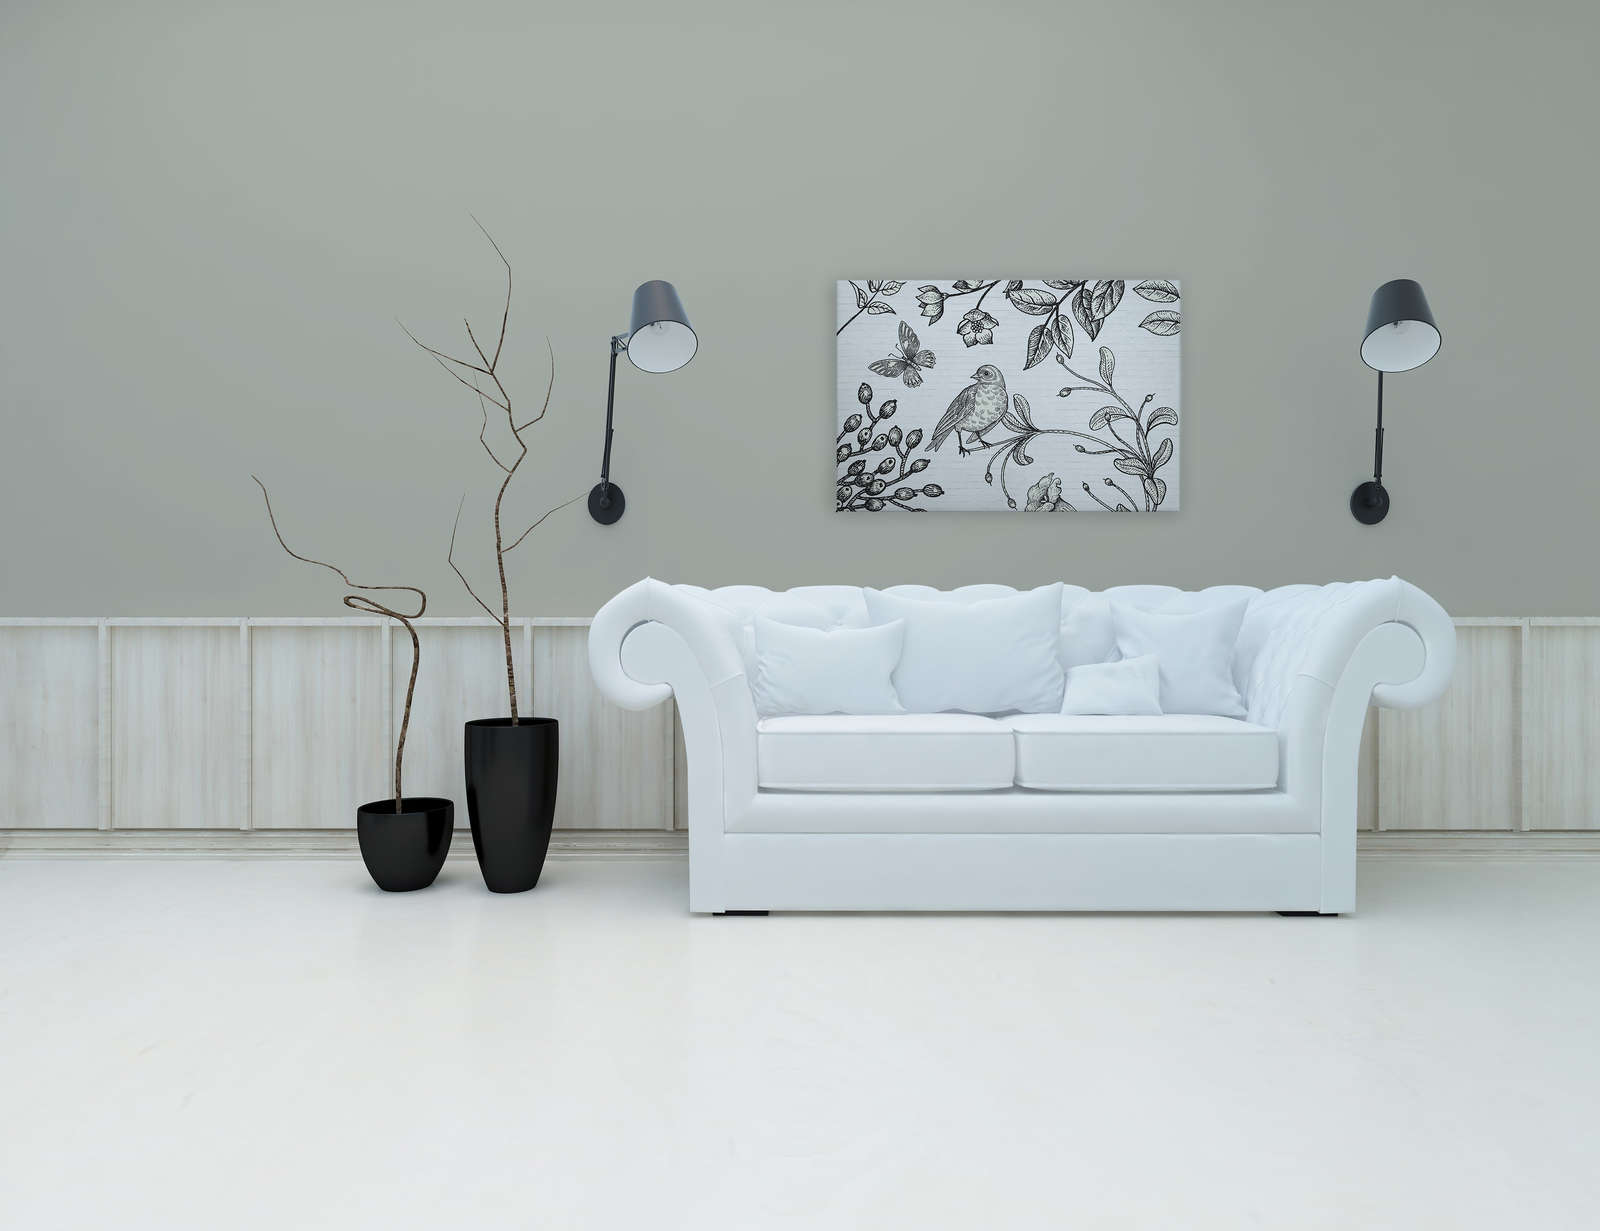             Toile noir et blanc avec motif nature en look BD - 0,90 m x 0,60 m
        